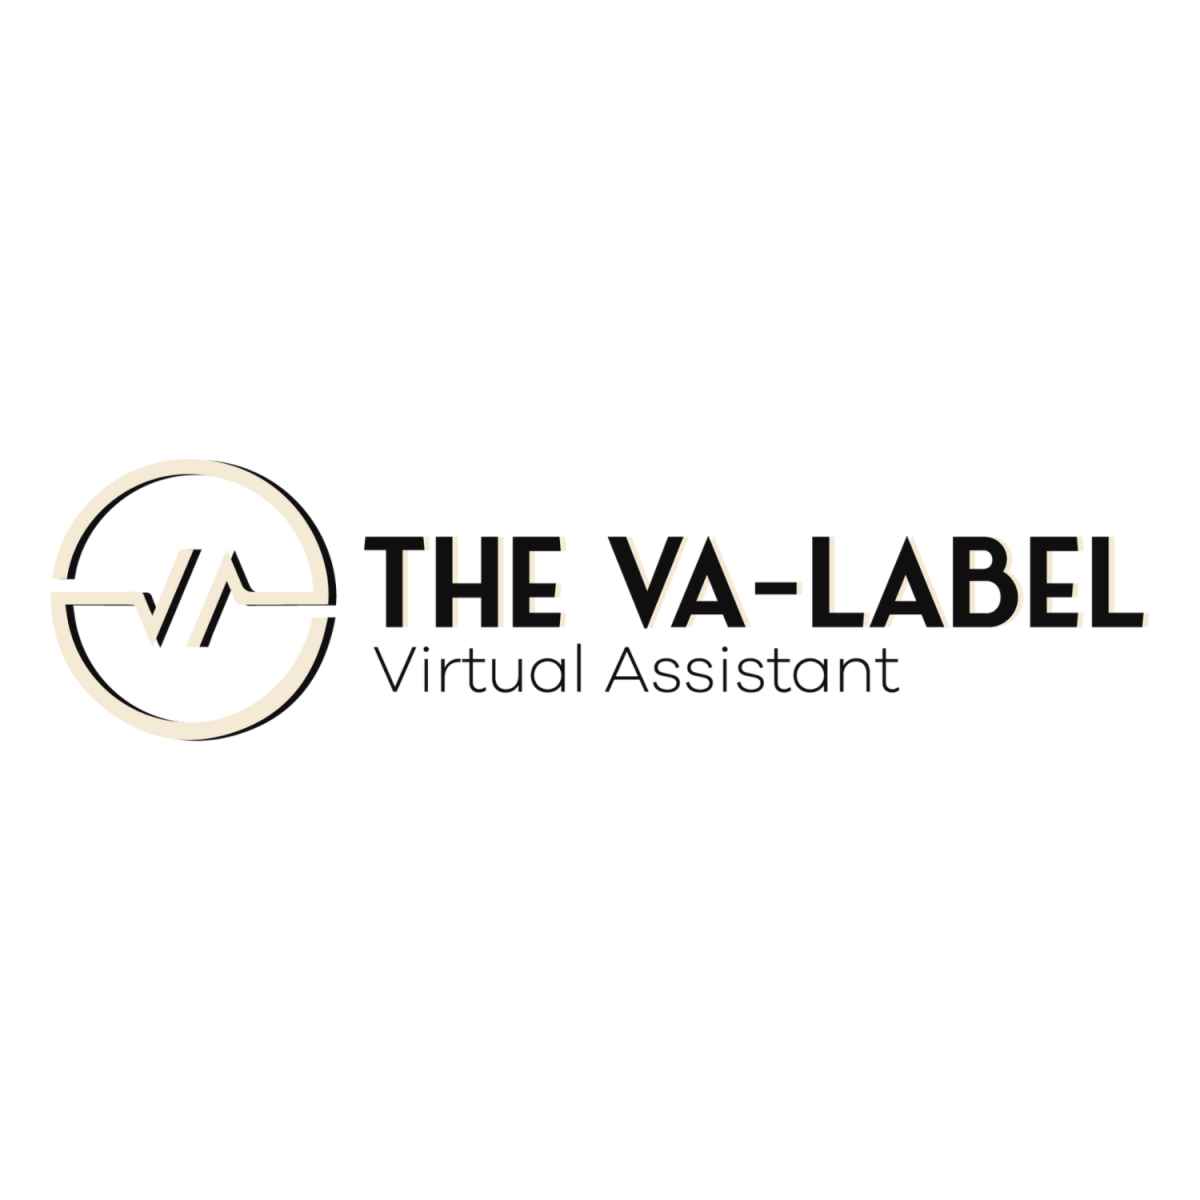 The VA-Label